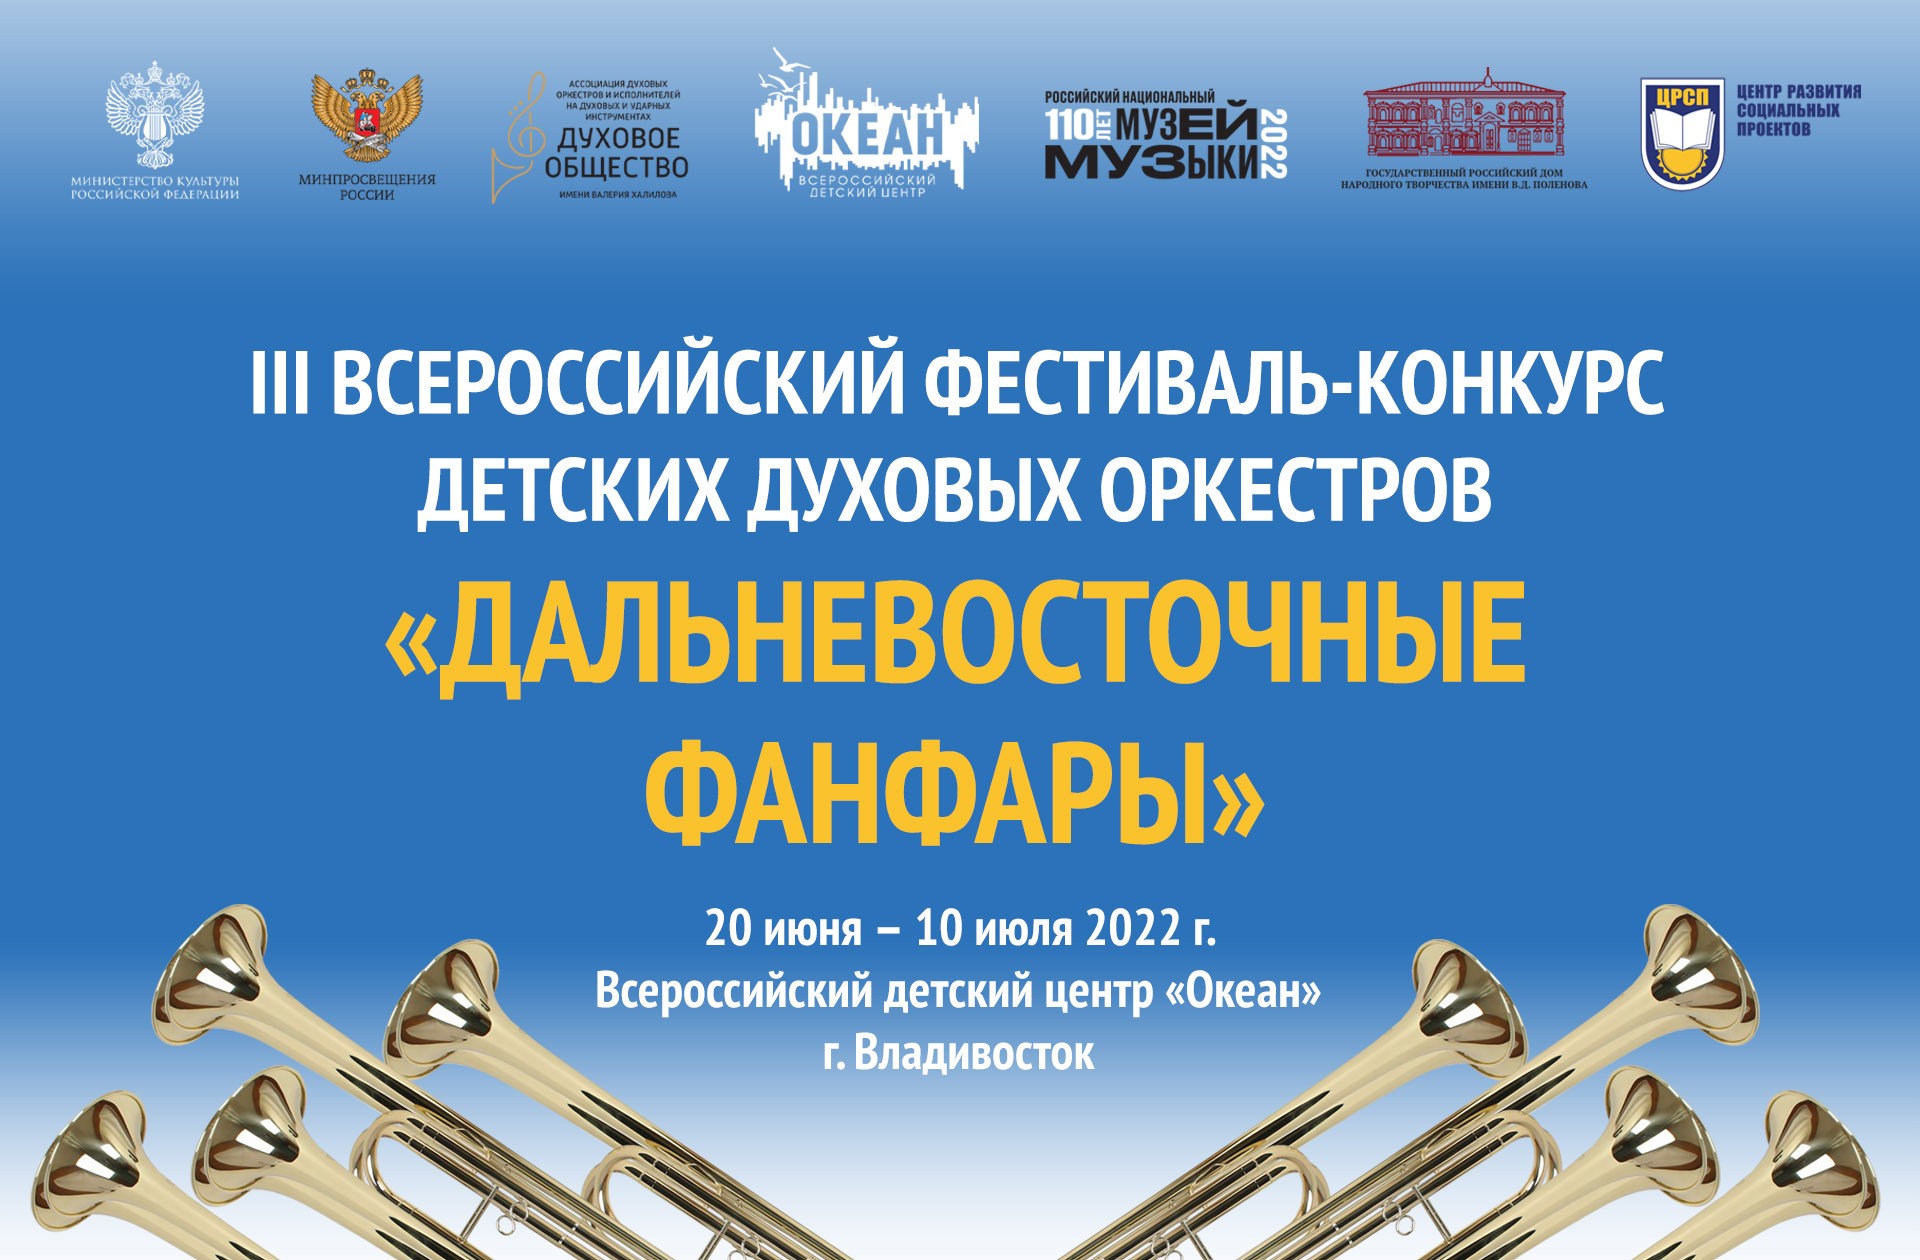 Во Владивостоке состоится ежегодный Всероссийский фестиваль детских духовых оркестров